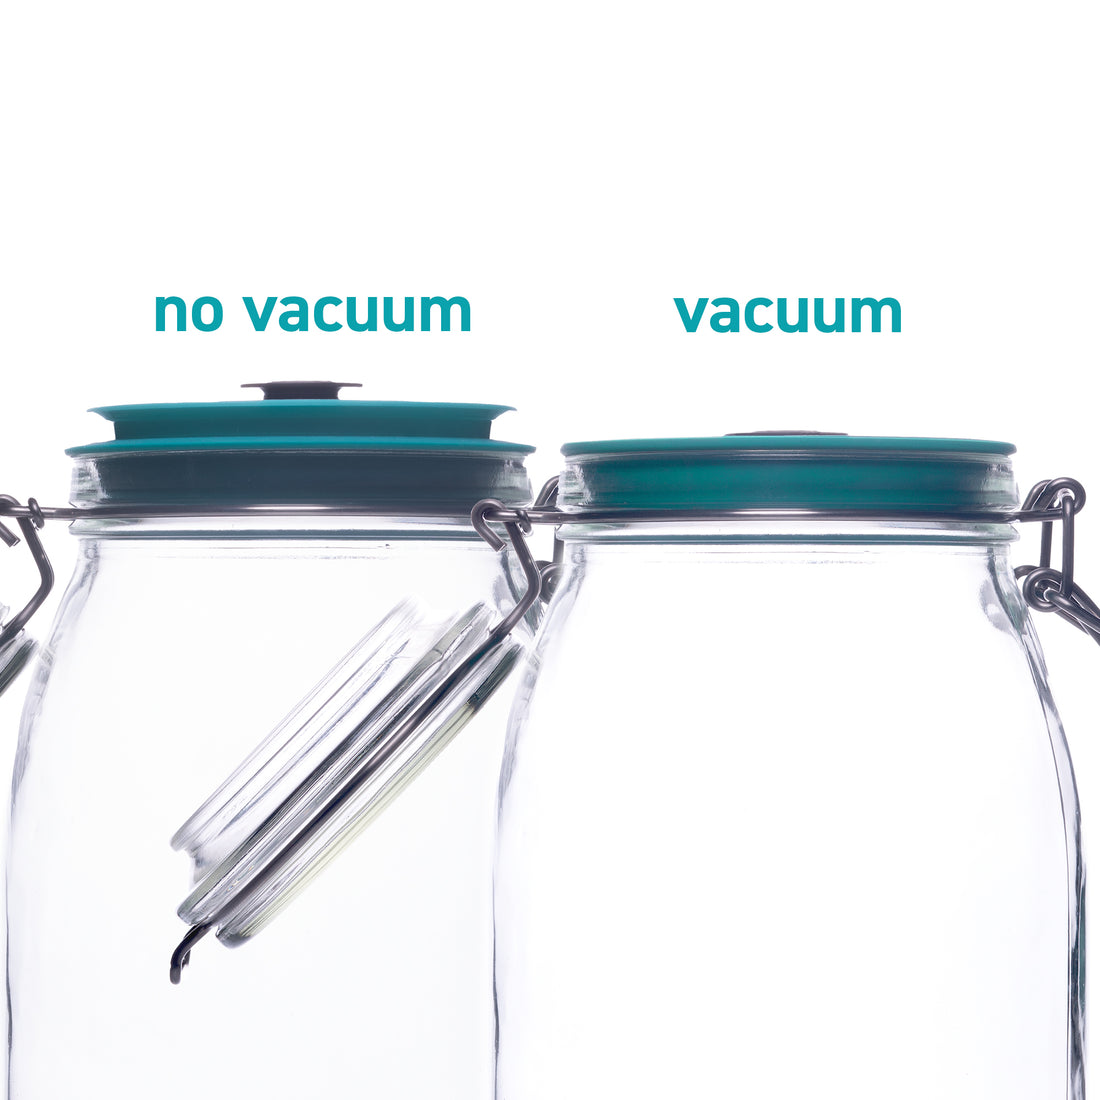 Vakuumset für Weckgläser - 3er-Set Kilner®-Gläser 0,5L/17oz mit Deckel und Vakuumpumpe